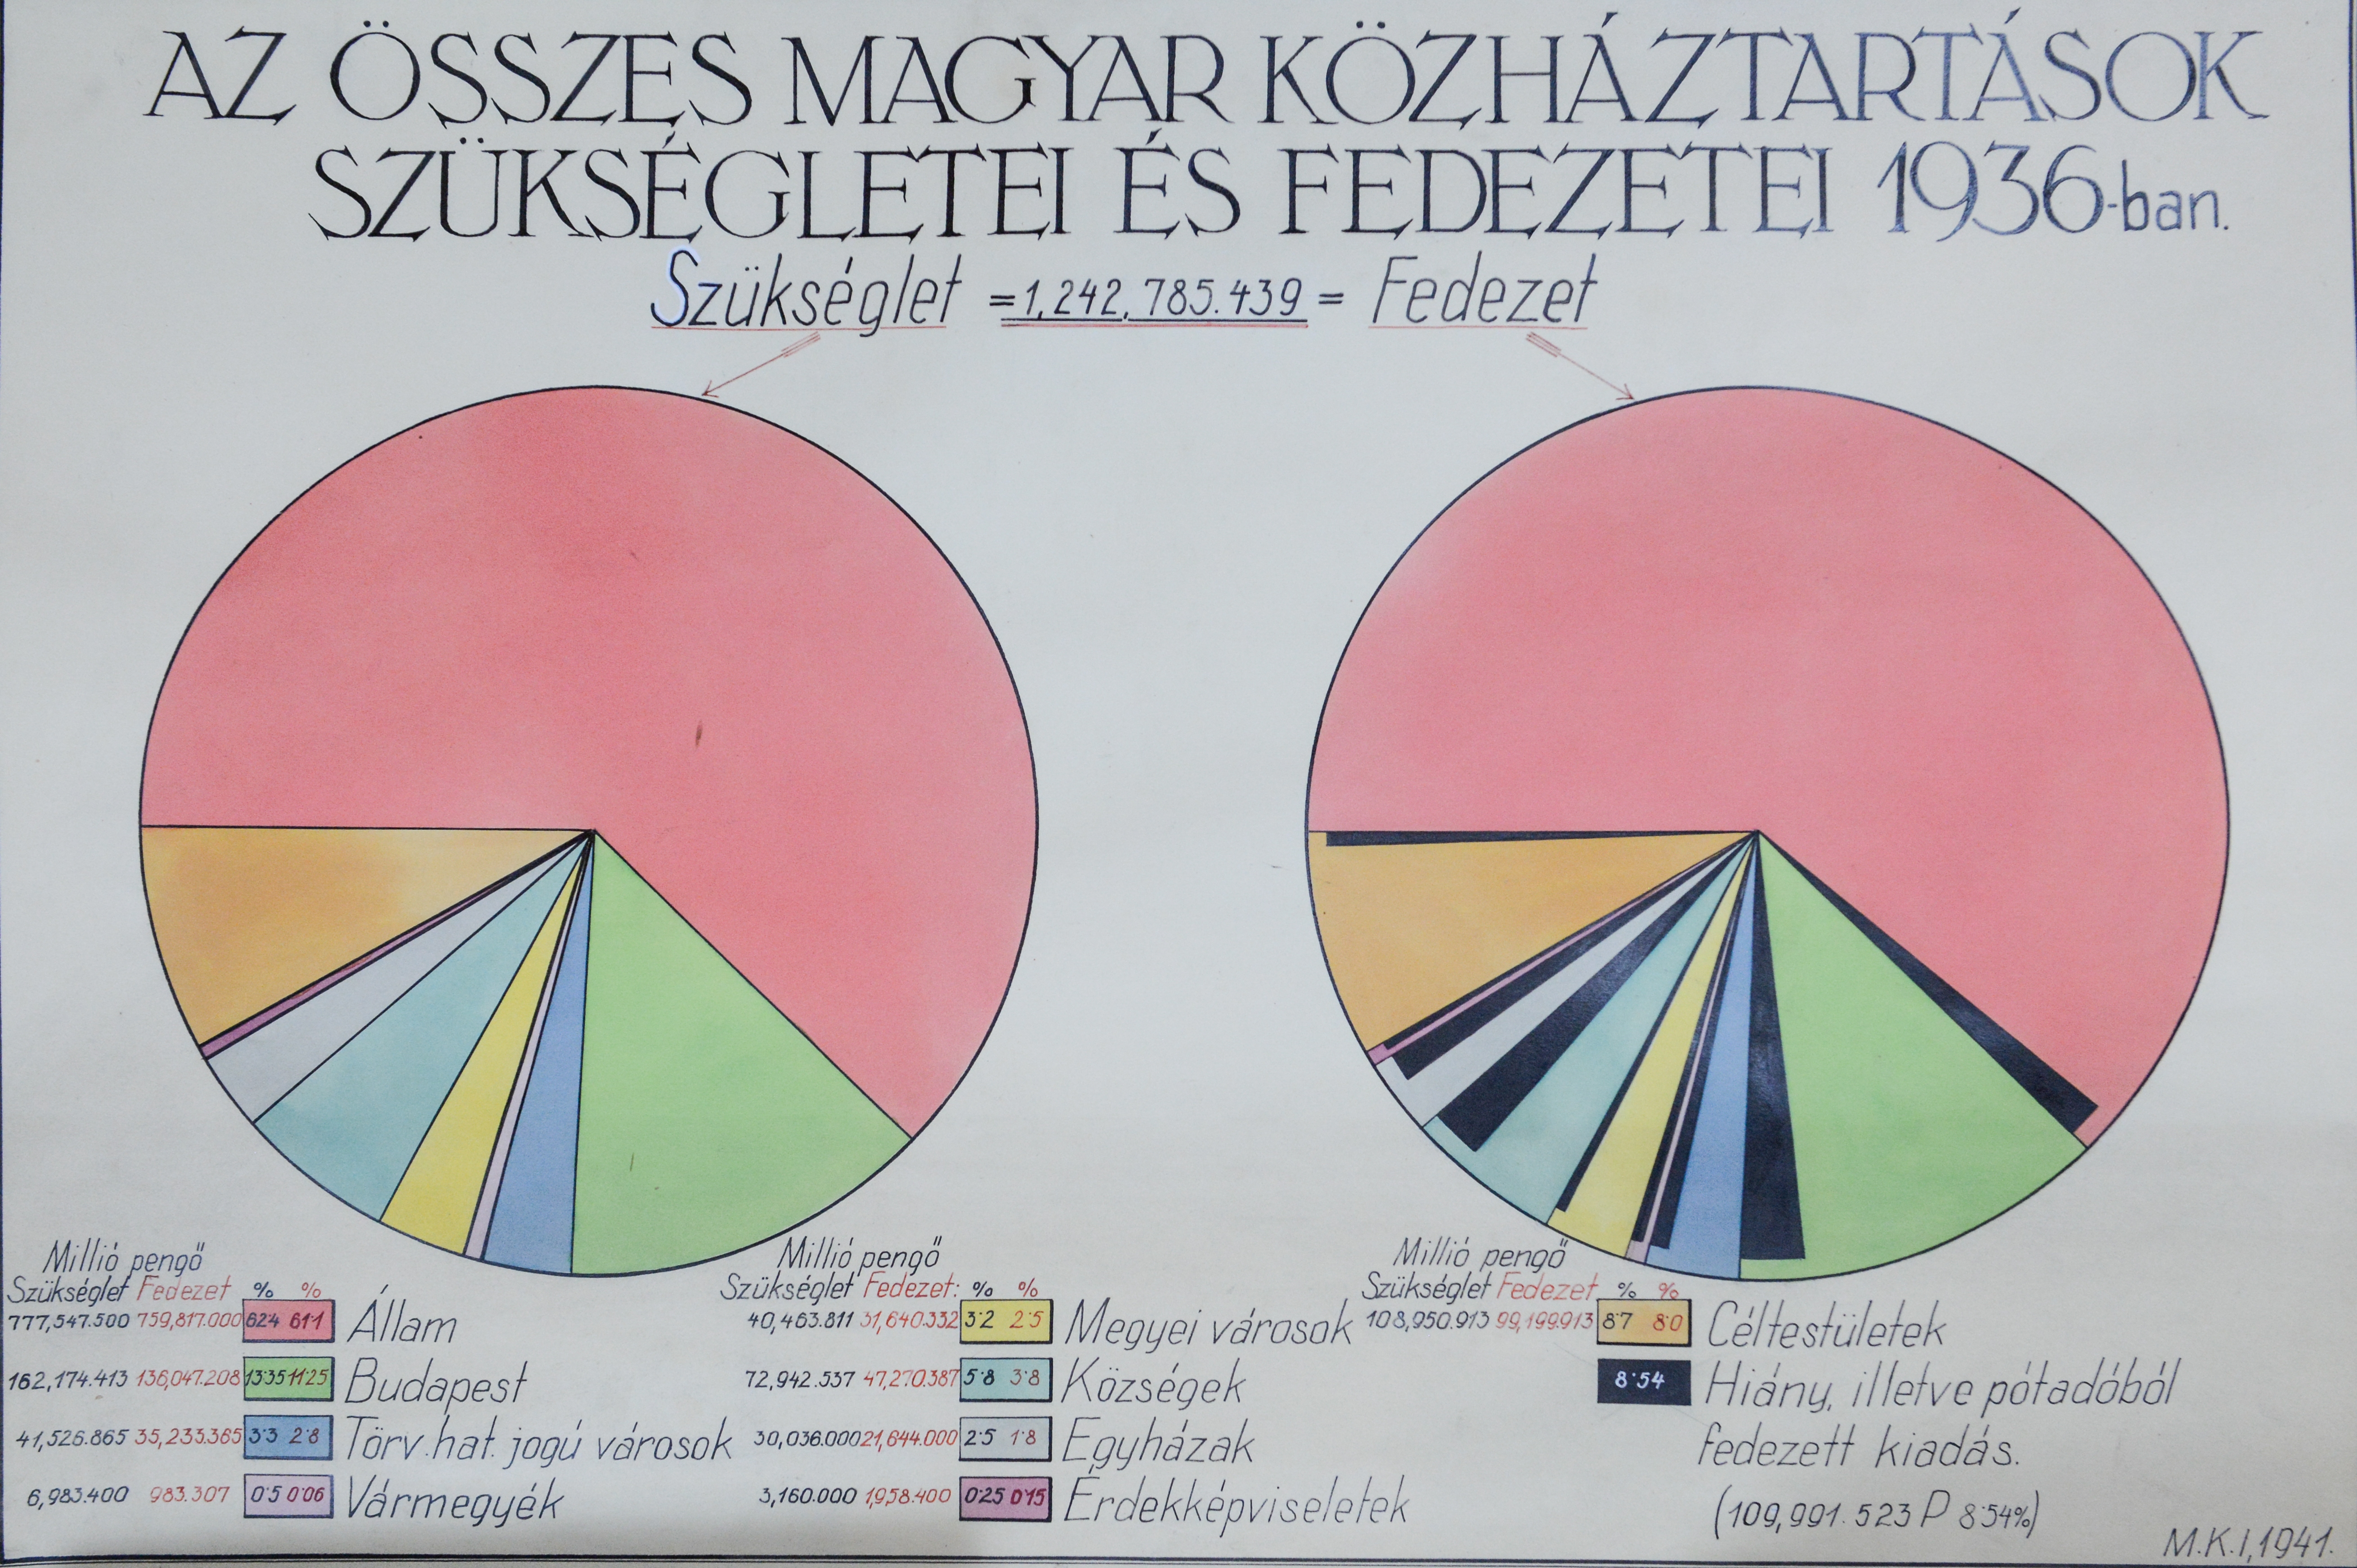 A magyar közháztartások szükségletei és fedezetei 1936-ban